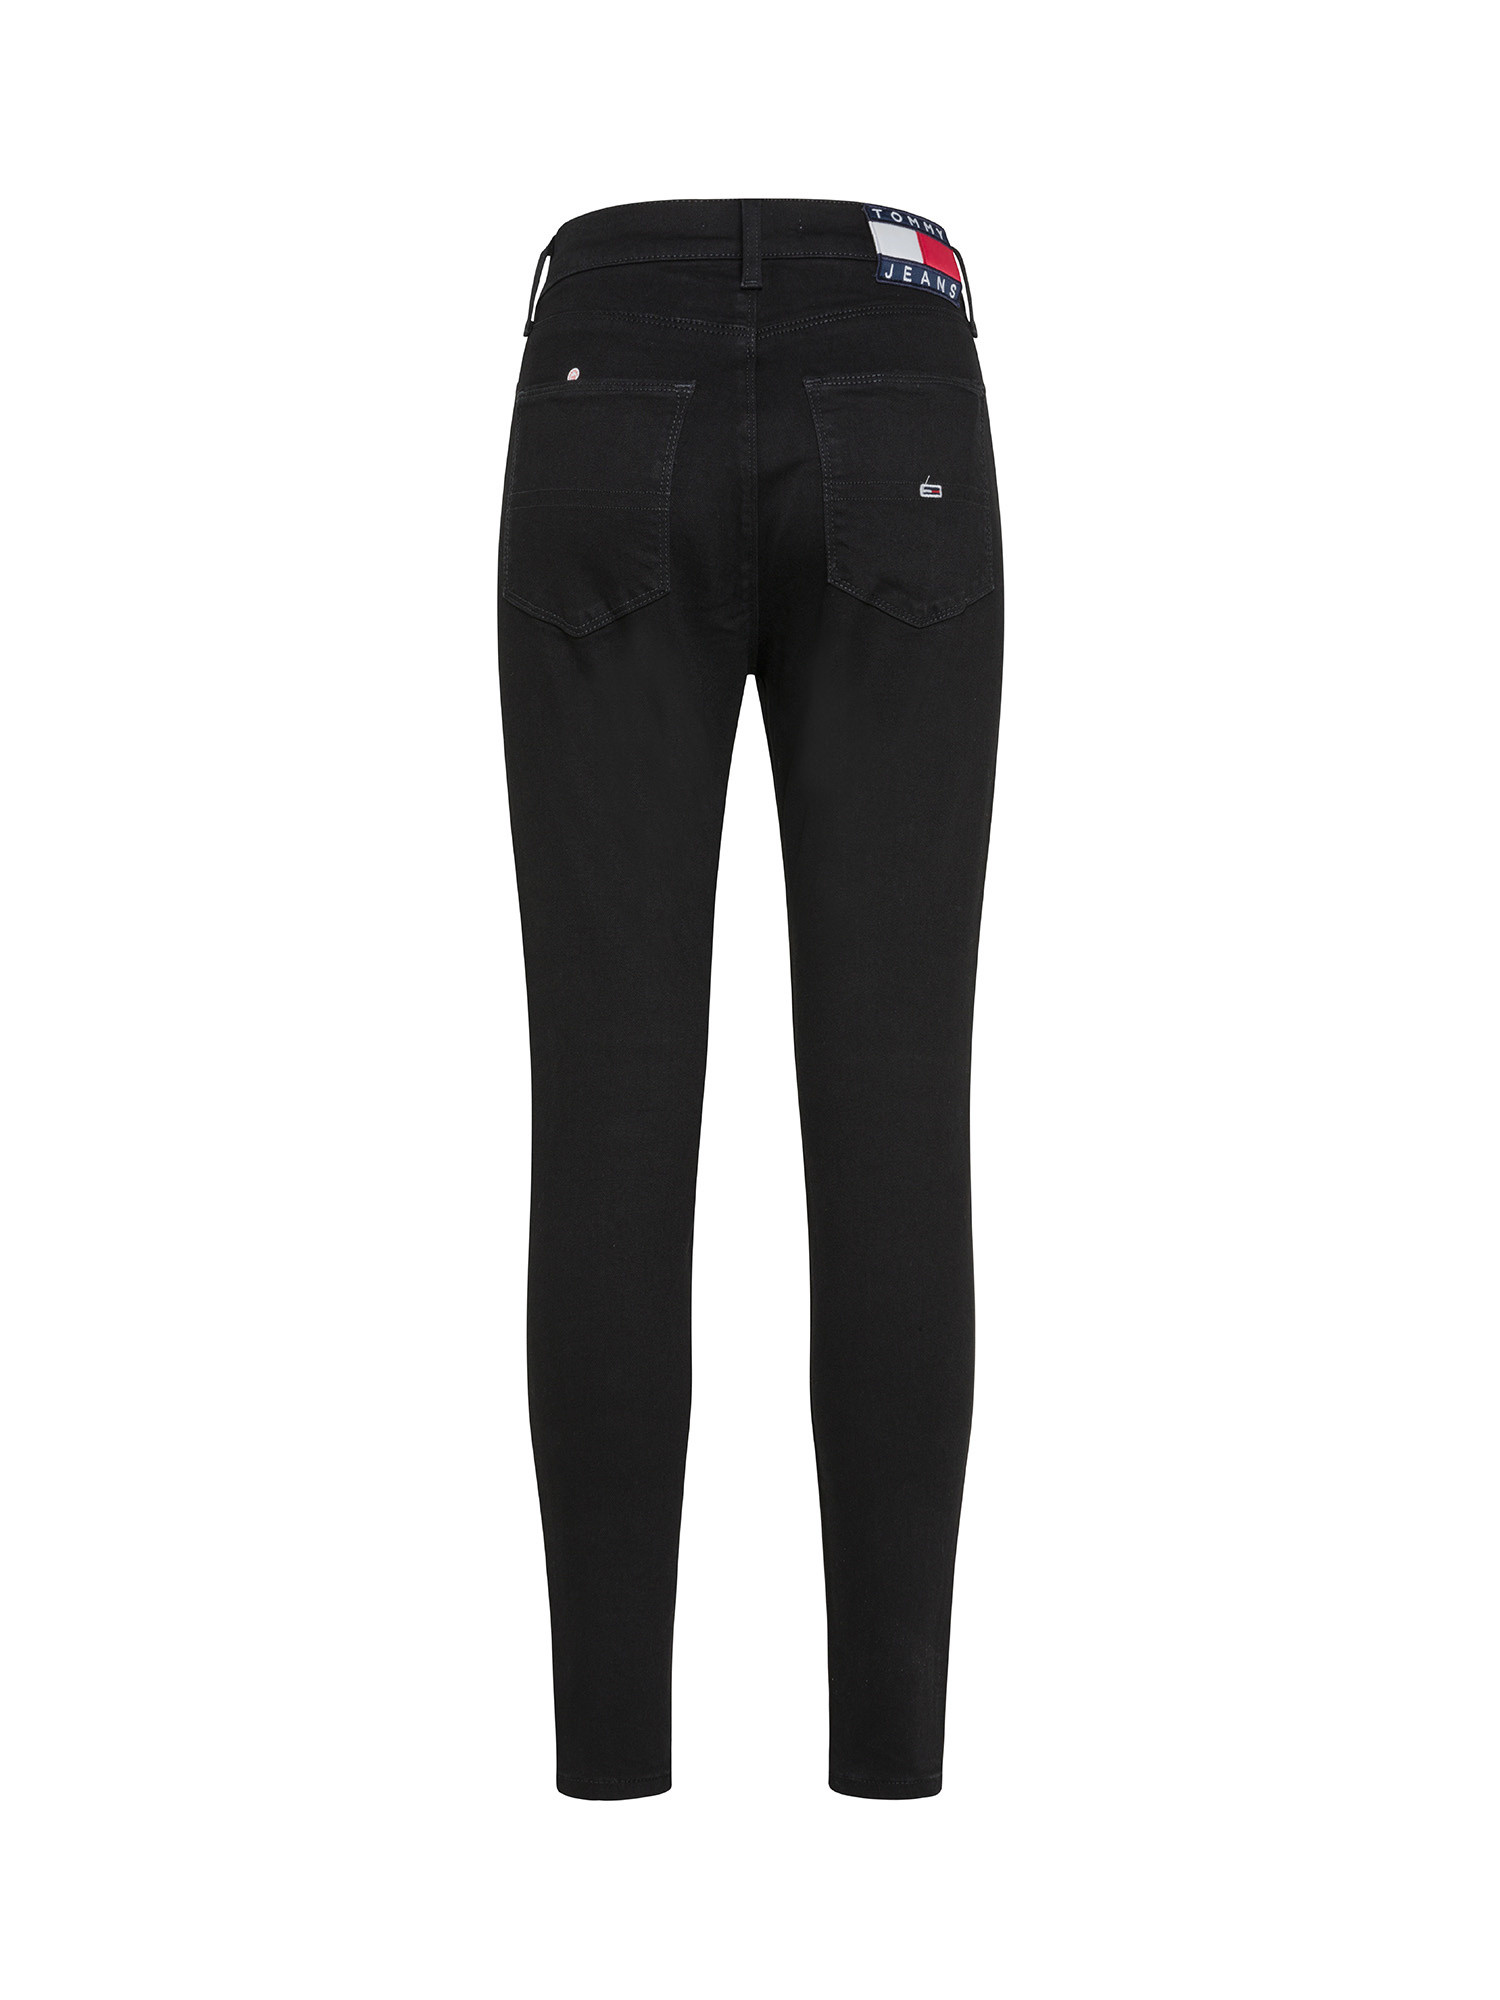 Tommy Jeans - Super skinny jeans, Black, large image number 1